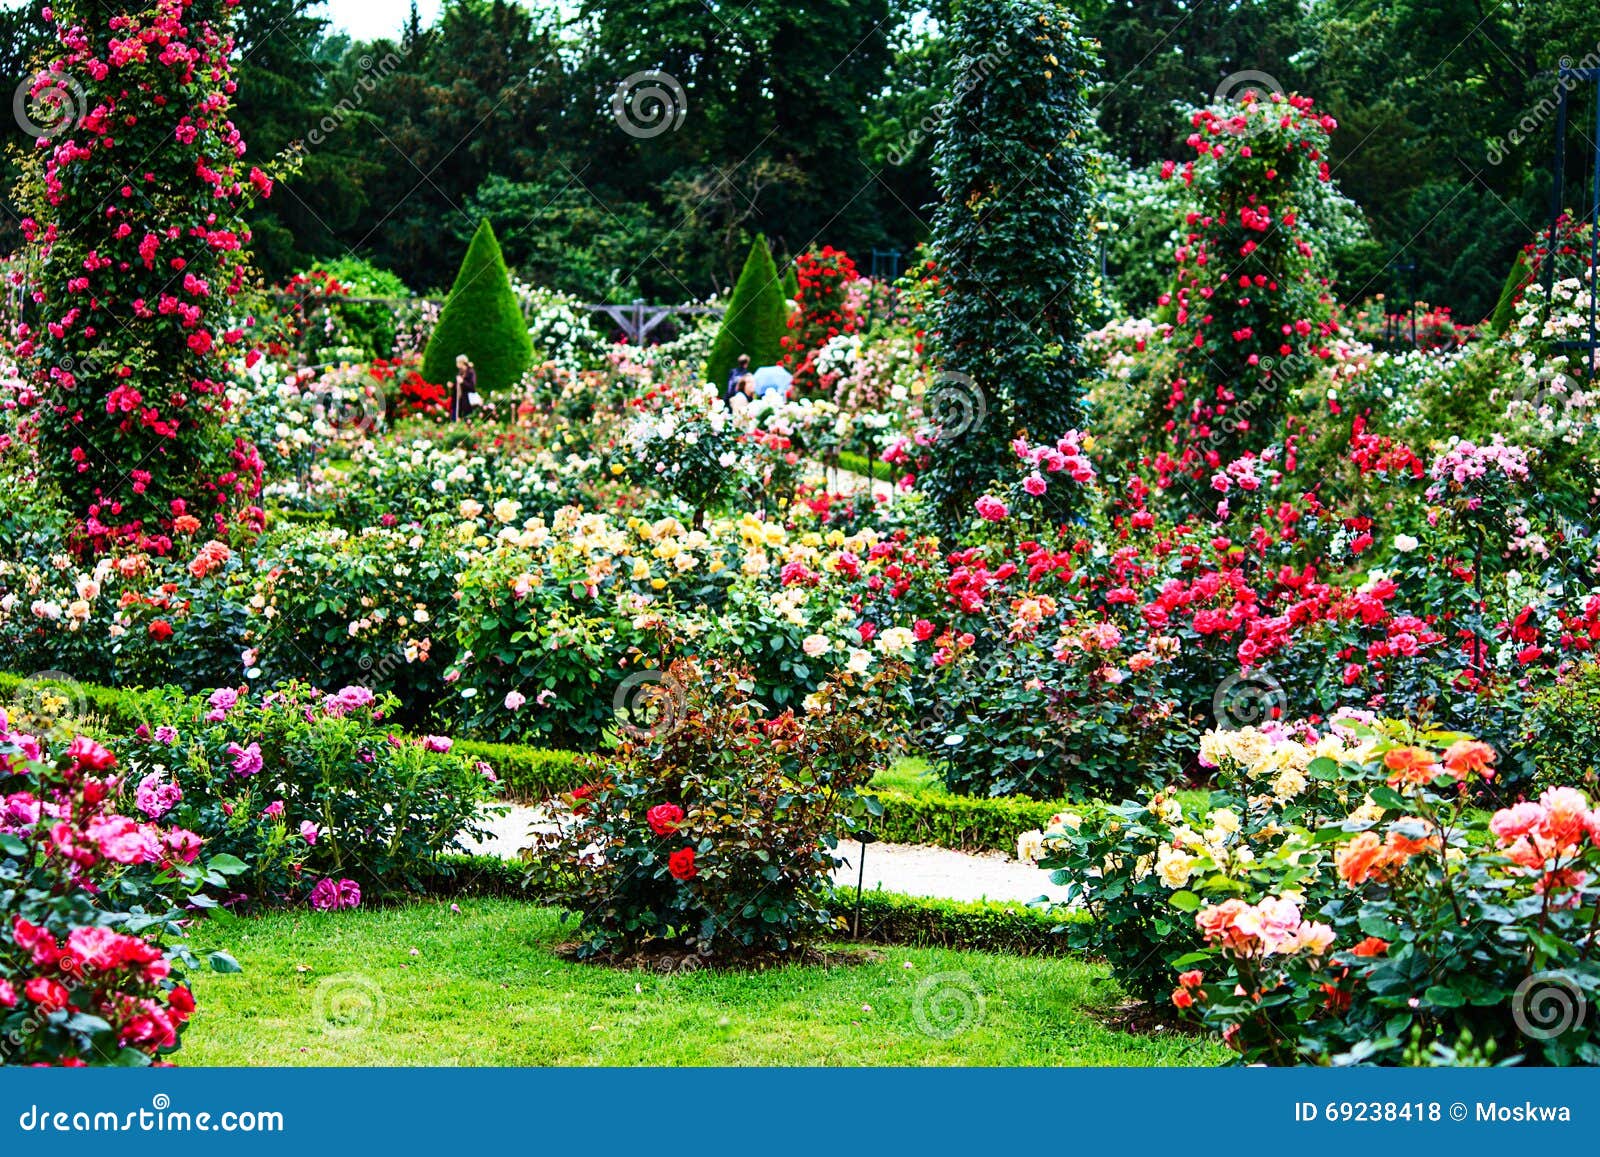 paris- bois de boulogne classic rose garden in the roseraie de bagatelle